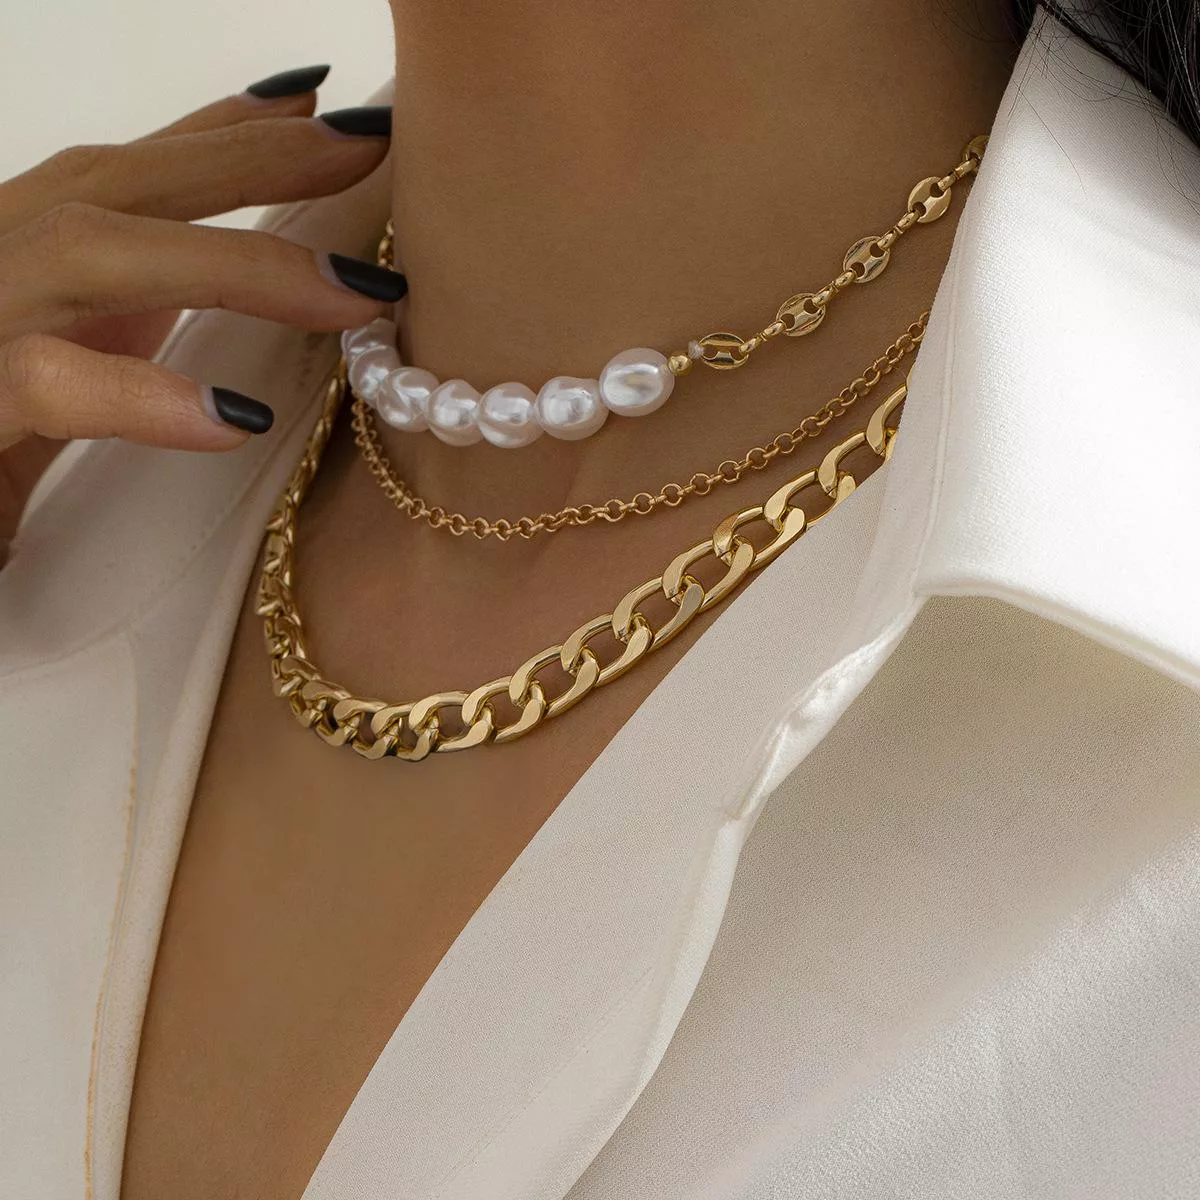 pedir disculpas limpiar exilio Estos son los collares de moda 2022 que necesitas tener – Moda – WebMediums